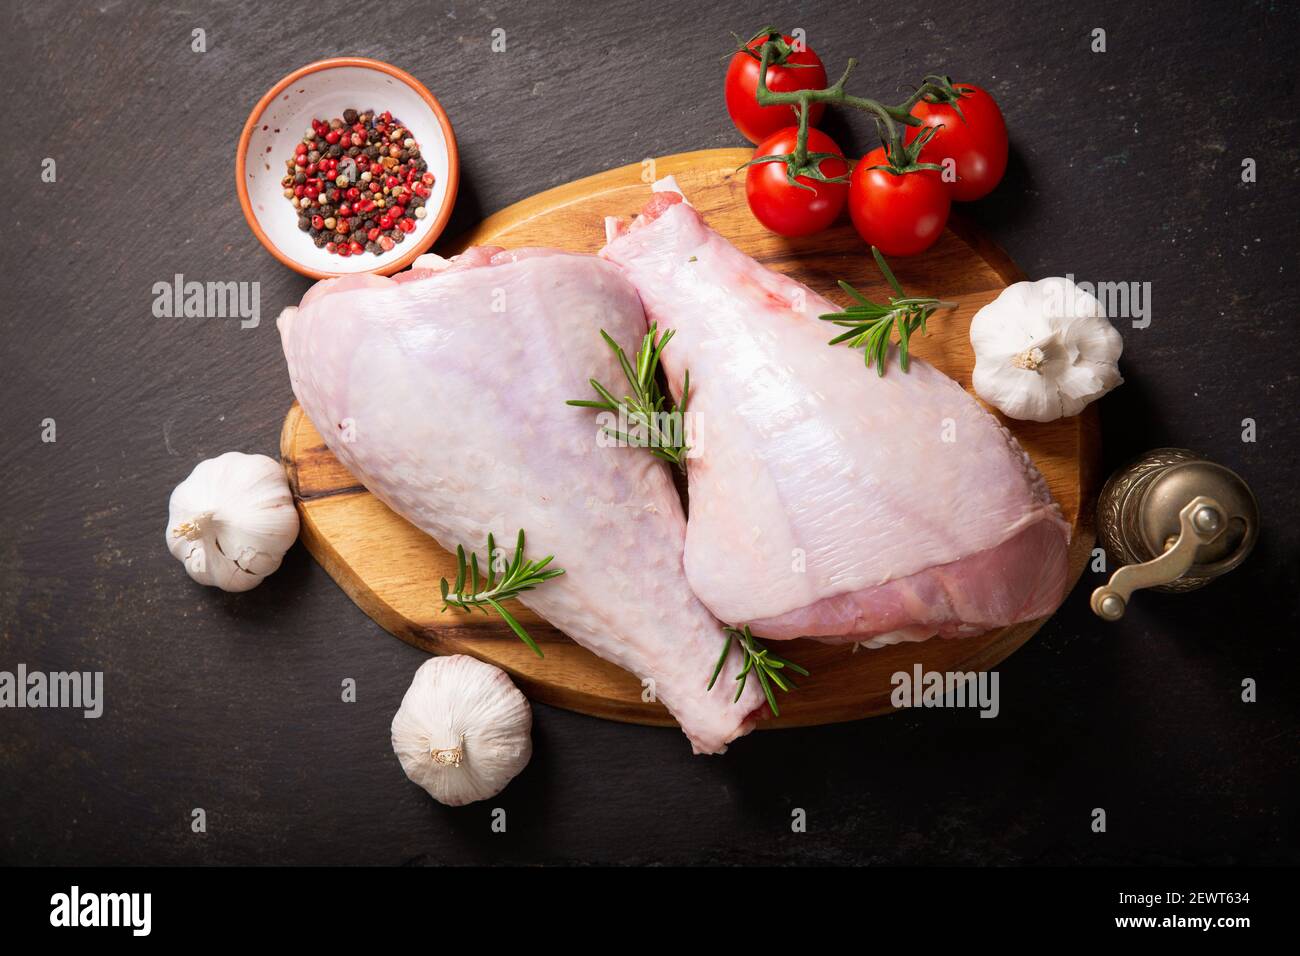 Frische putenbeine mit Zutaten zum Kochen auf dunklem Hintergrund, Draufsicht Stockfoto